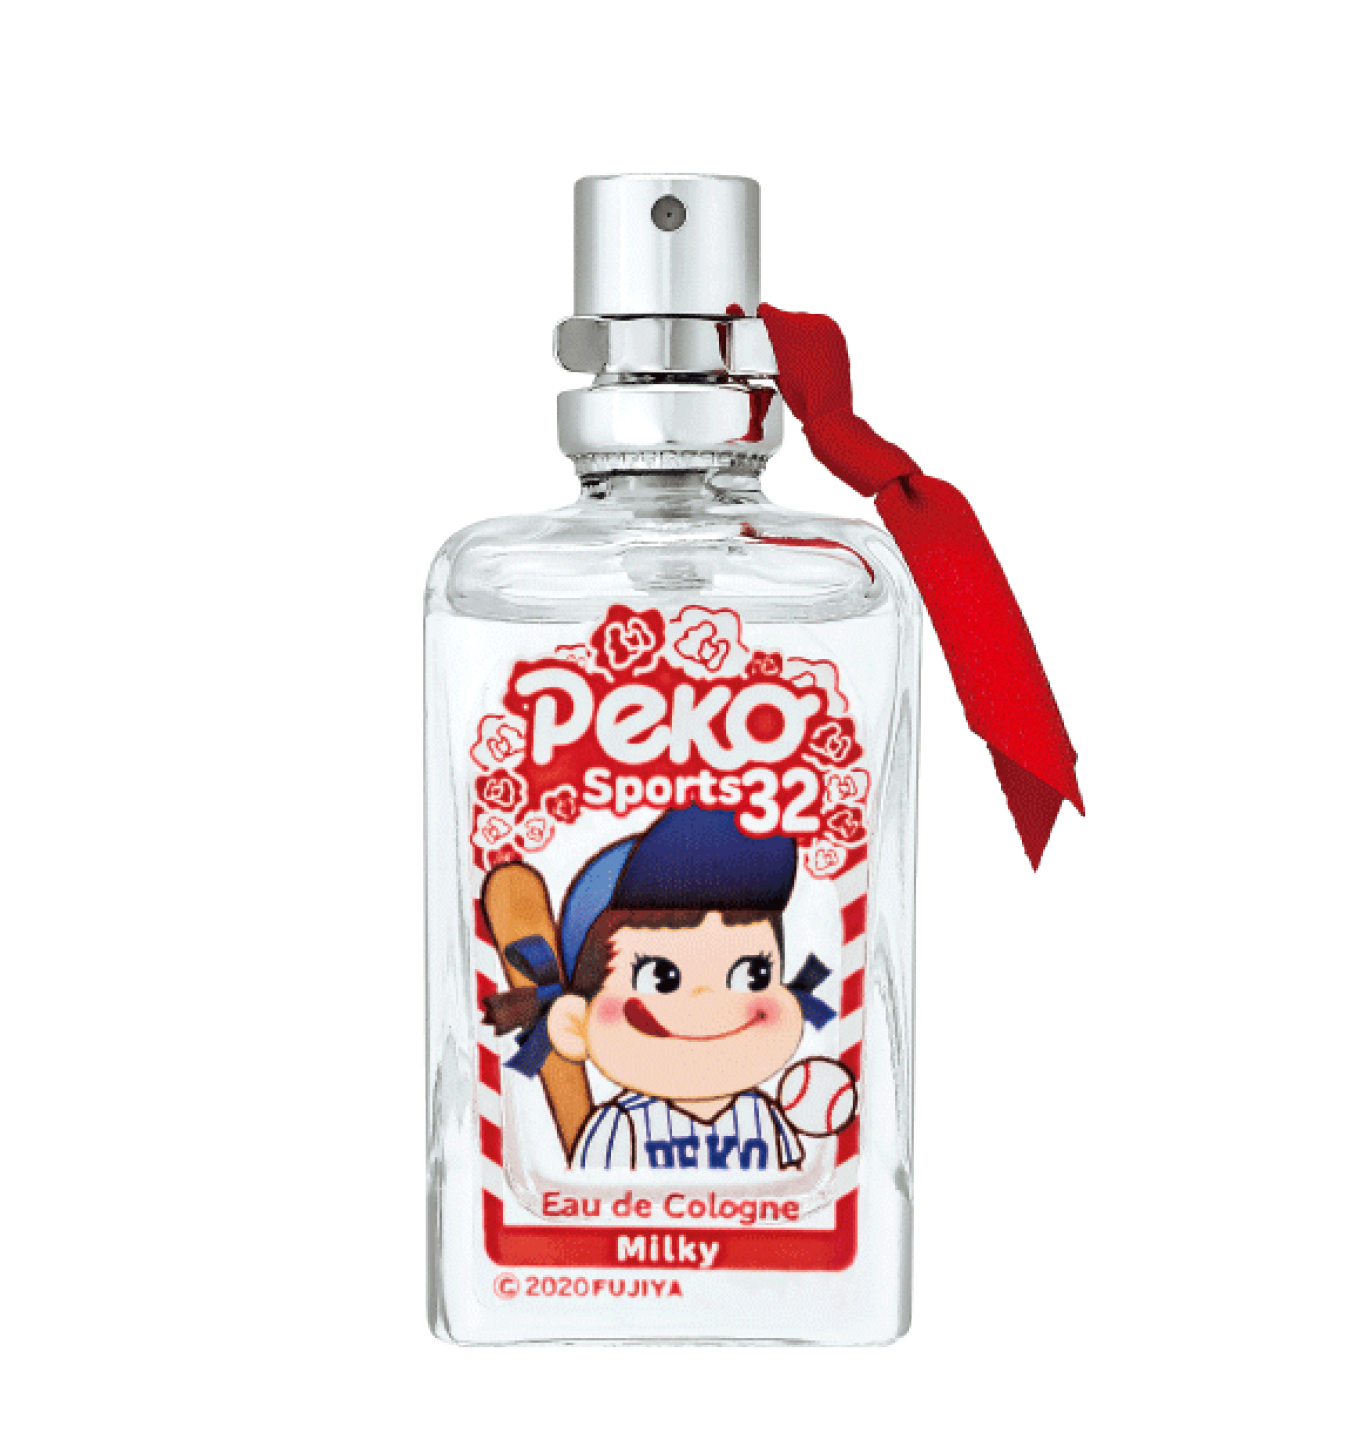 ミルキーの香り コラボ第2弾 アクアシャボン ペコちゃん運動会コロン 33種類のボトルデザインで新発売 Emo Miu エモミュー